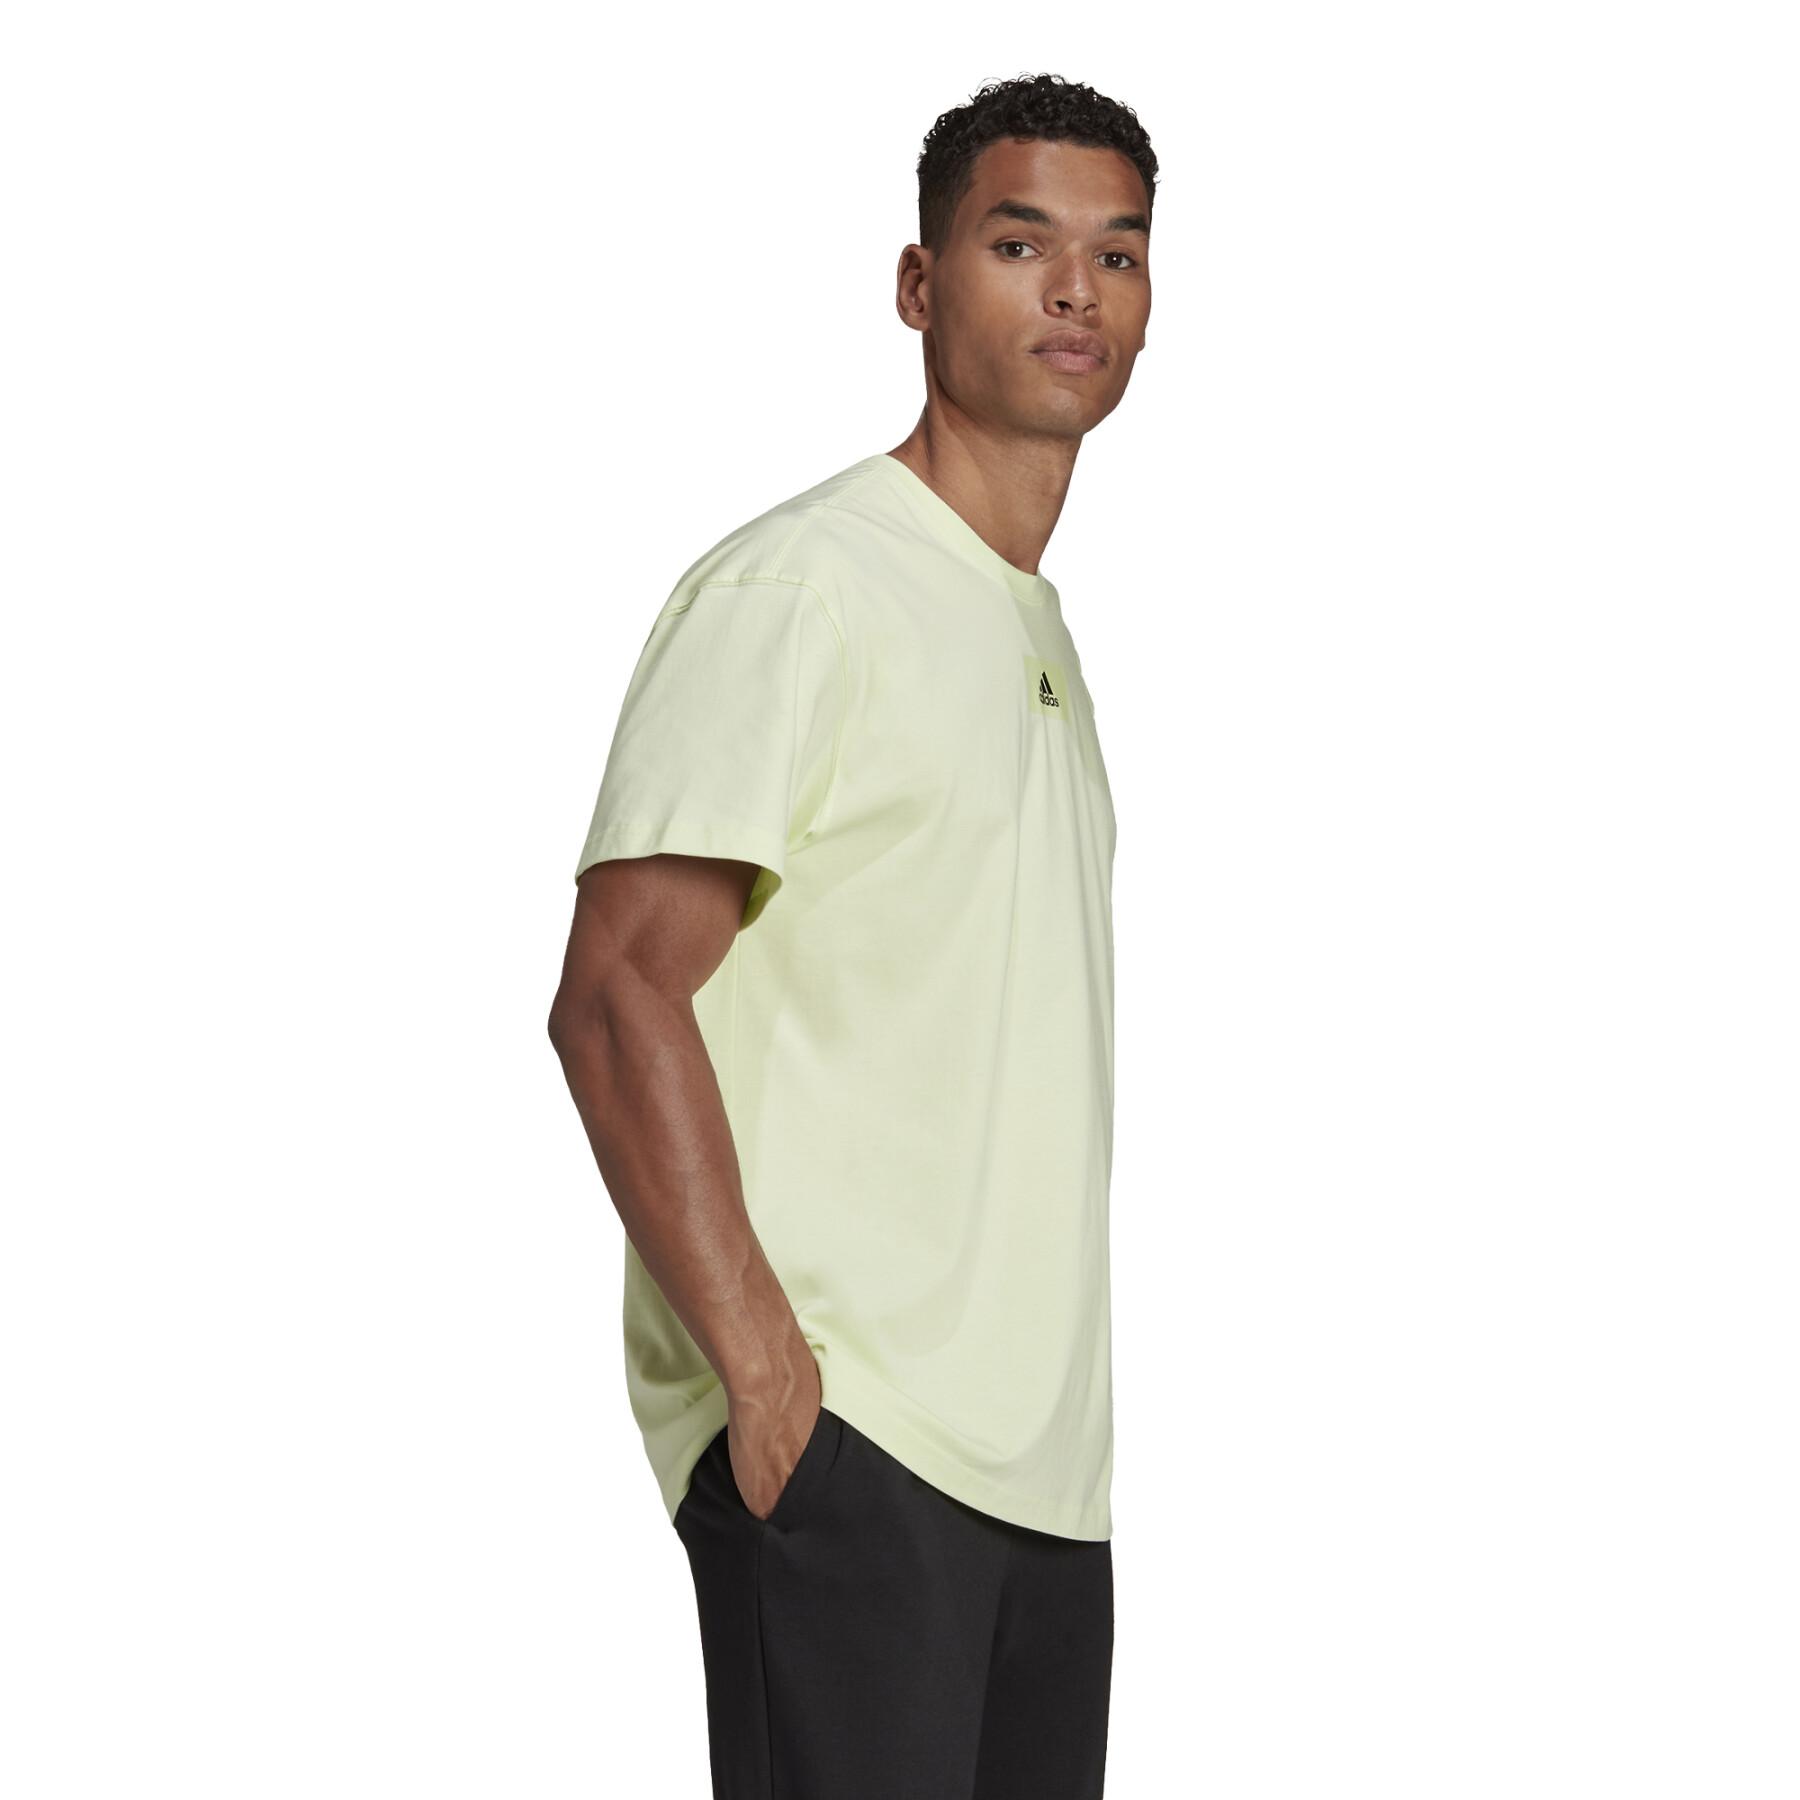 T-shirt adidas Essentials FeelVivid Drop Shoulder